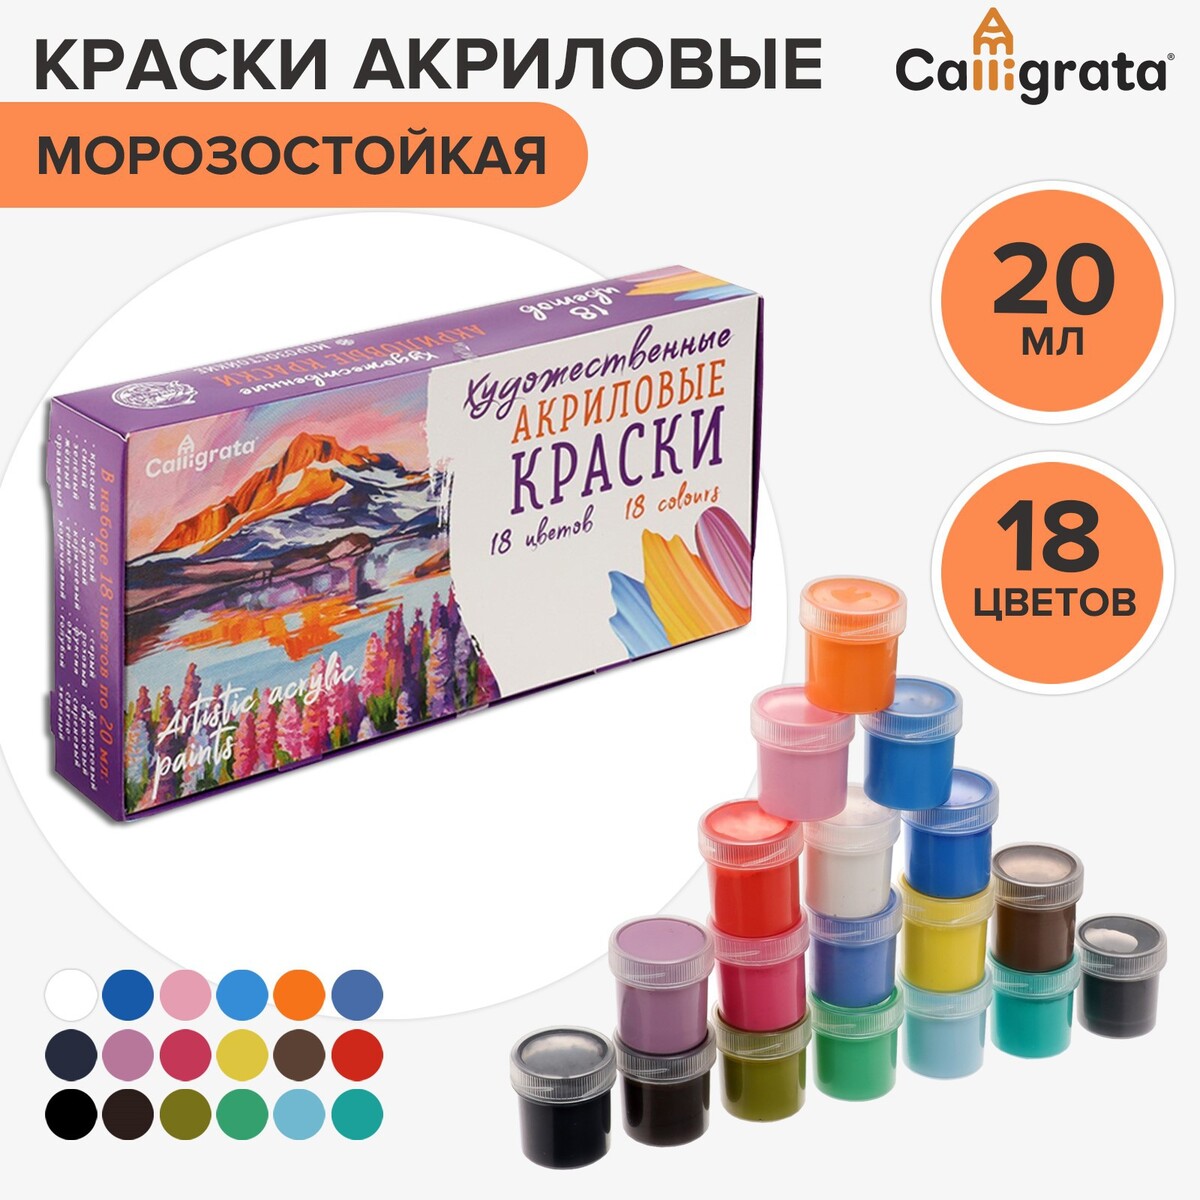 Краска акриловая, набор 18 цветов х 20 мл, calligrata художественная, морозостойкая, в картонной коробке лирические циклы